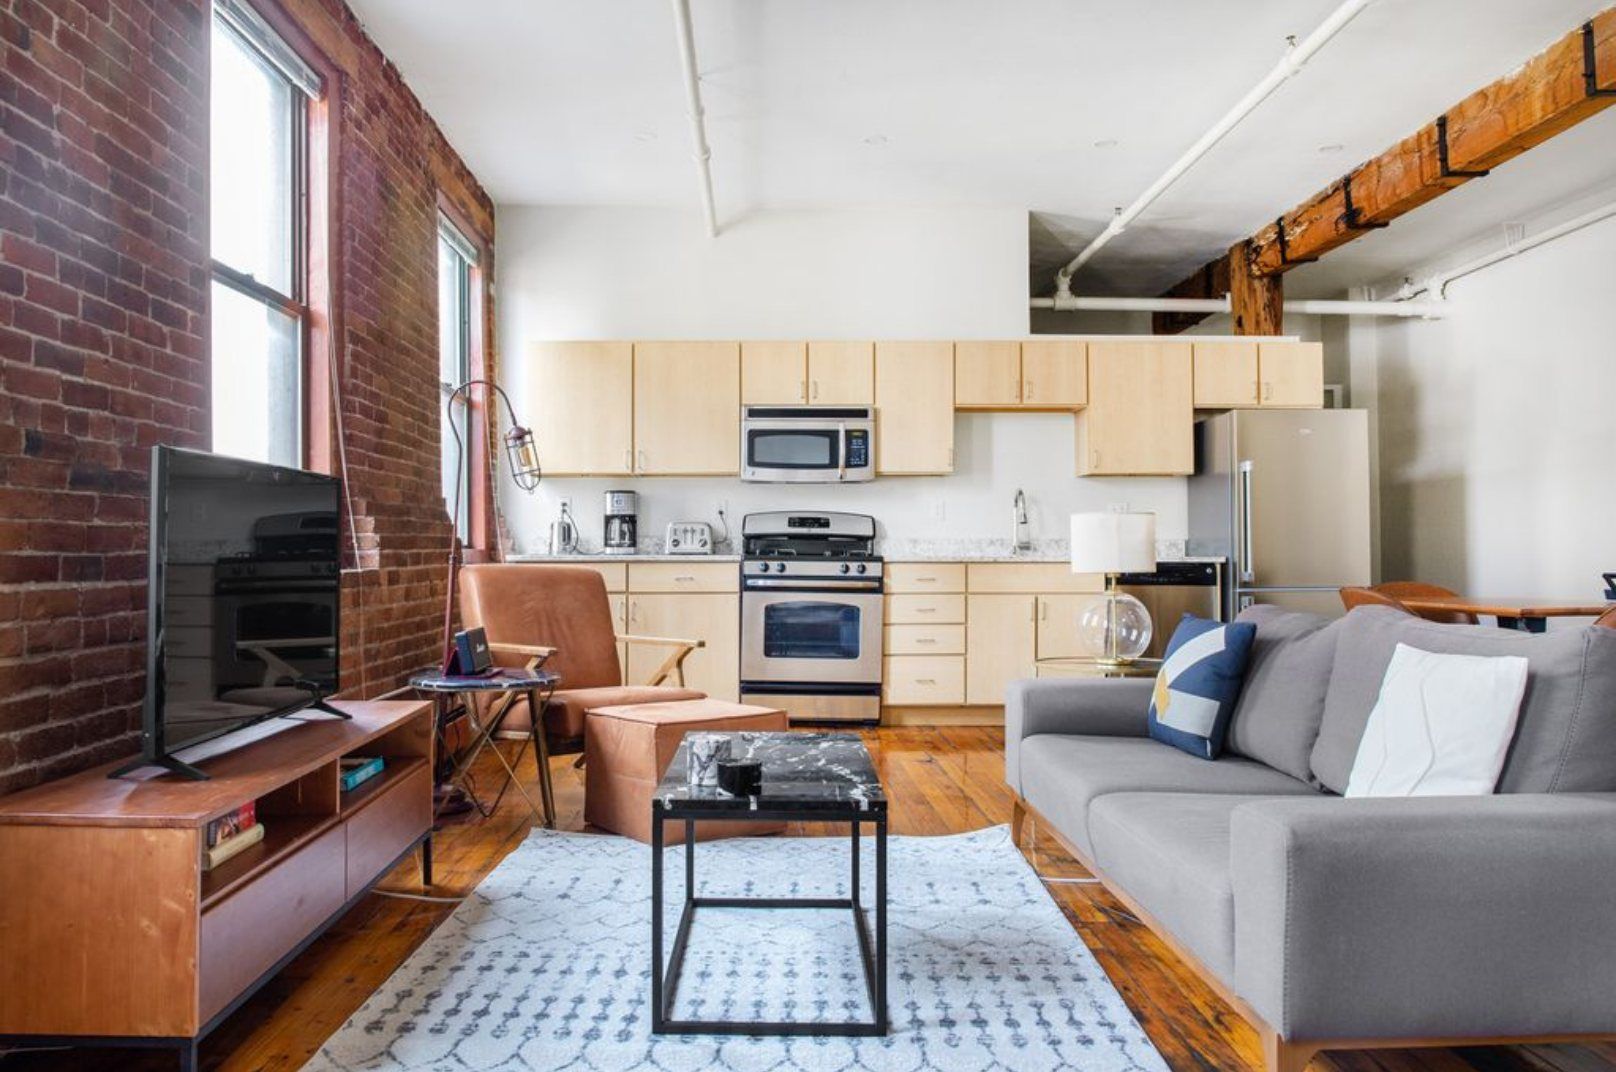 Airbnbs near Boston